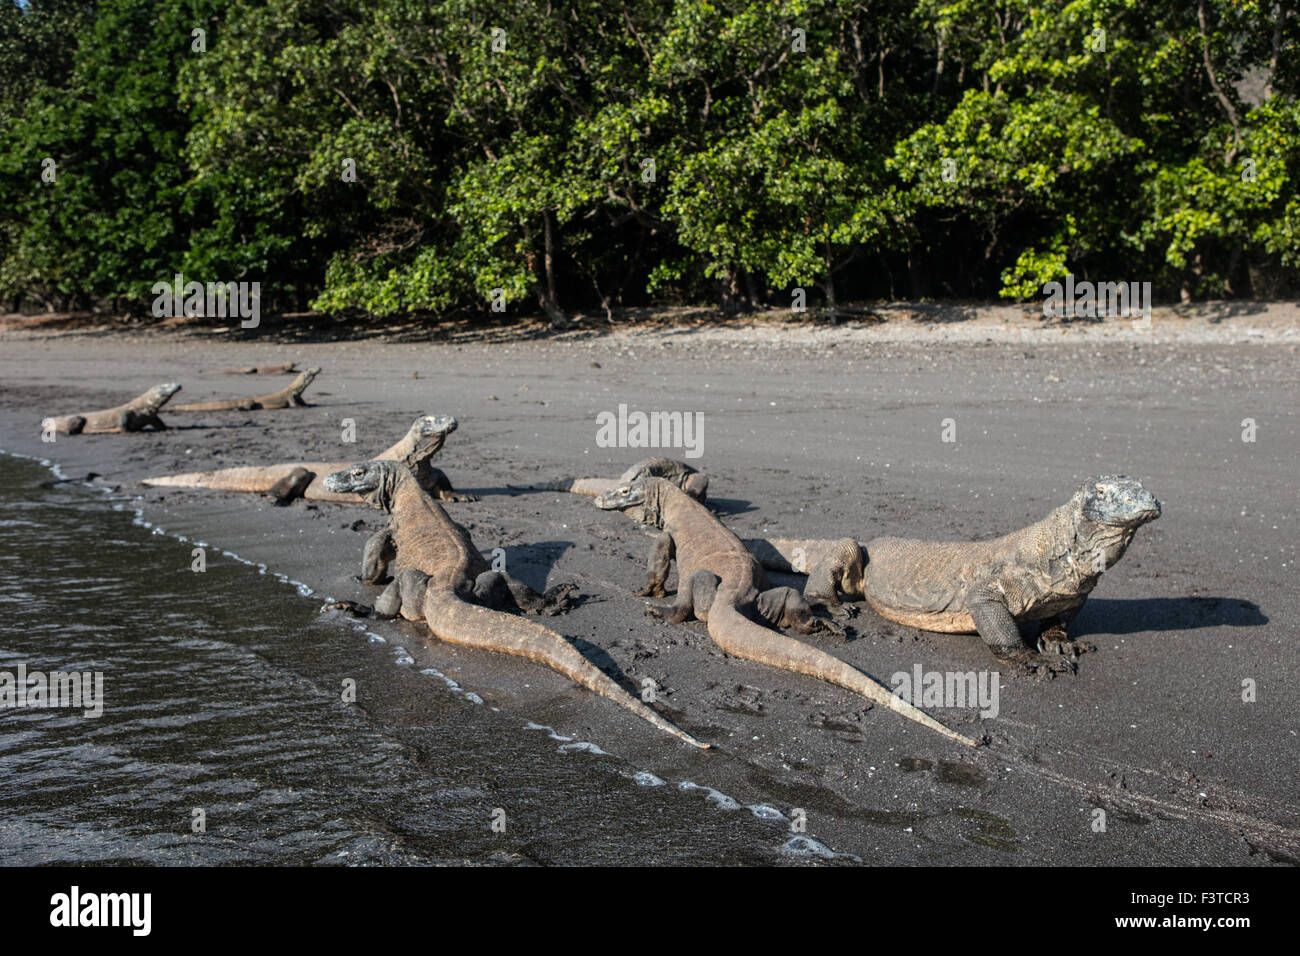 Komodo dragons (Varanus komodoensis) lay on a remote beach in Komodo National Park, Indonesia. Stock Photo